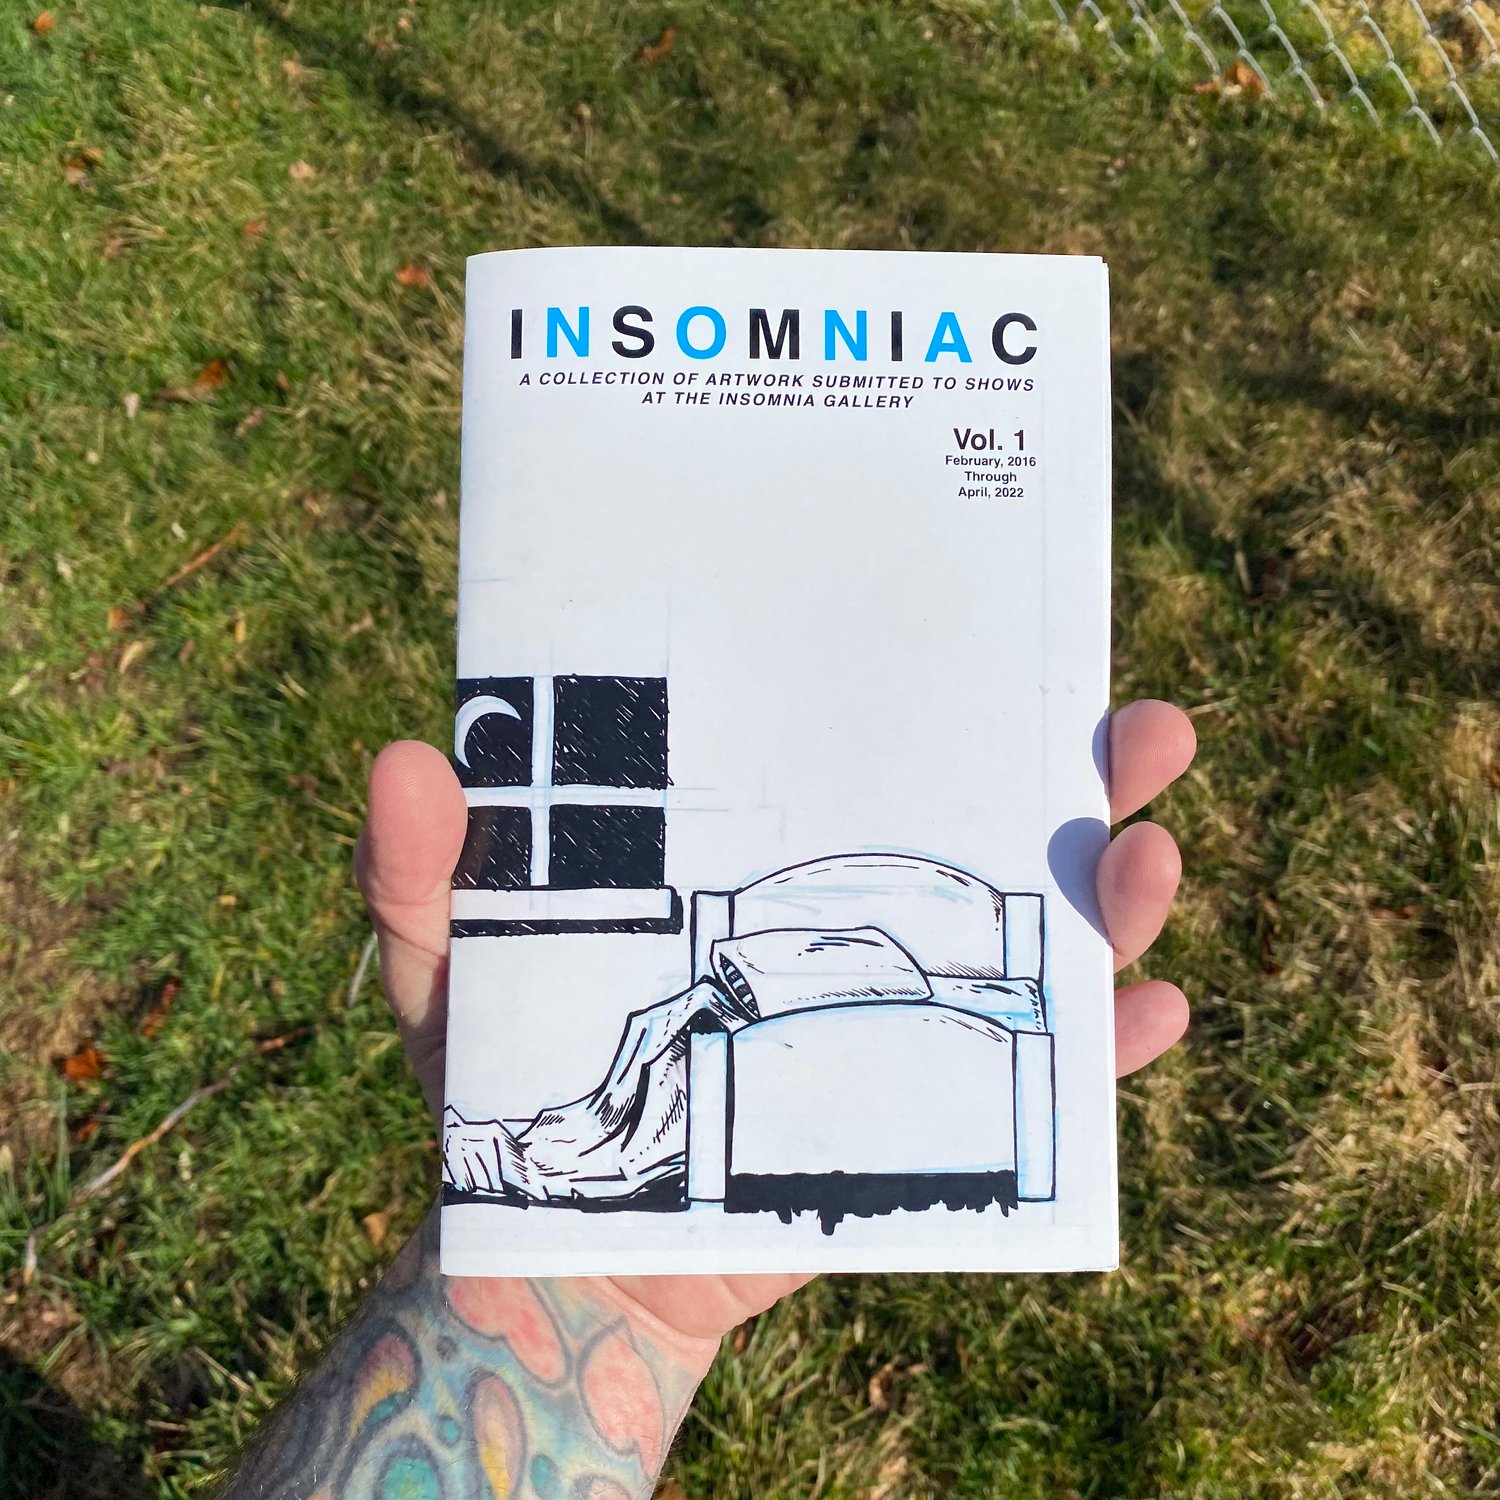 Insomniac Vol.1 by Mark Wise